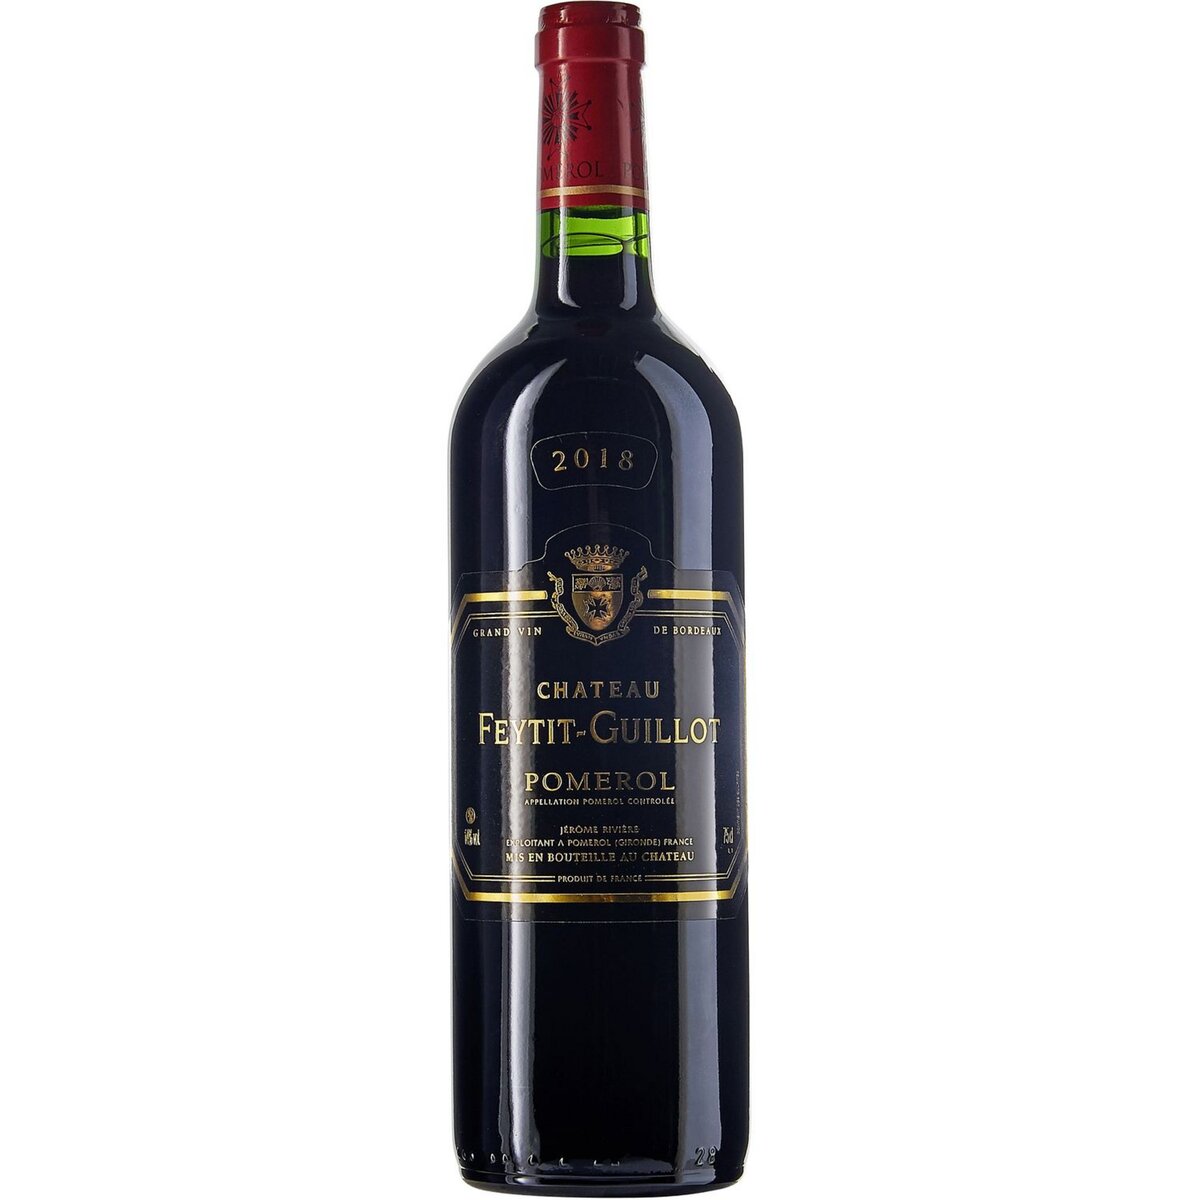 Vin rouge AOP Pomerol Château Feytit Guillot 2018 75cl